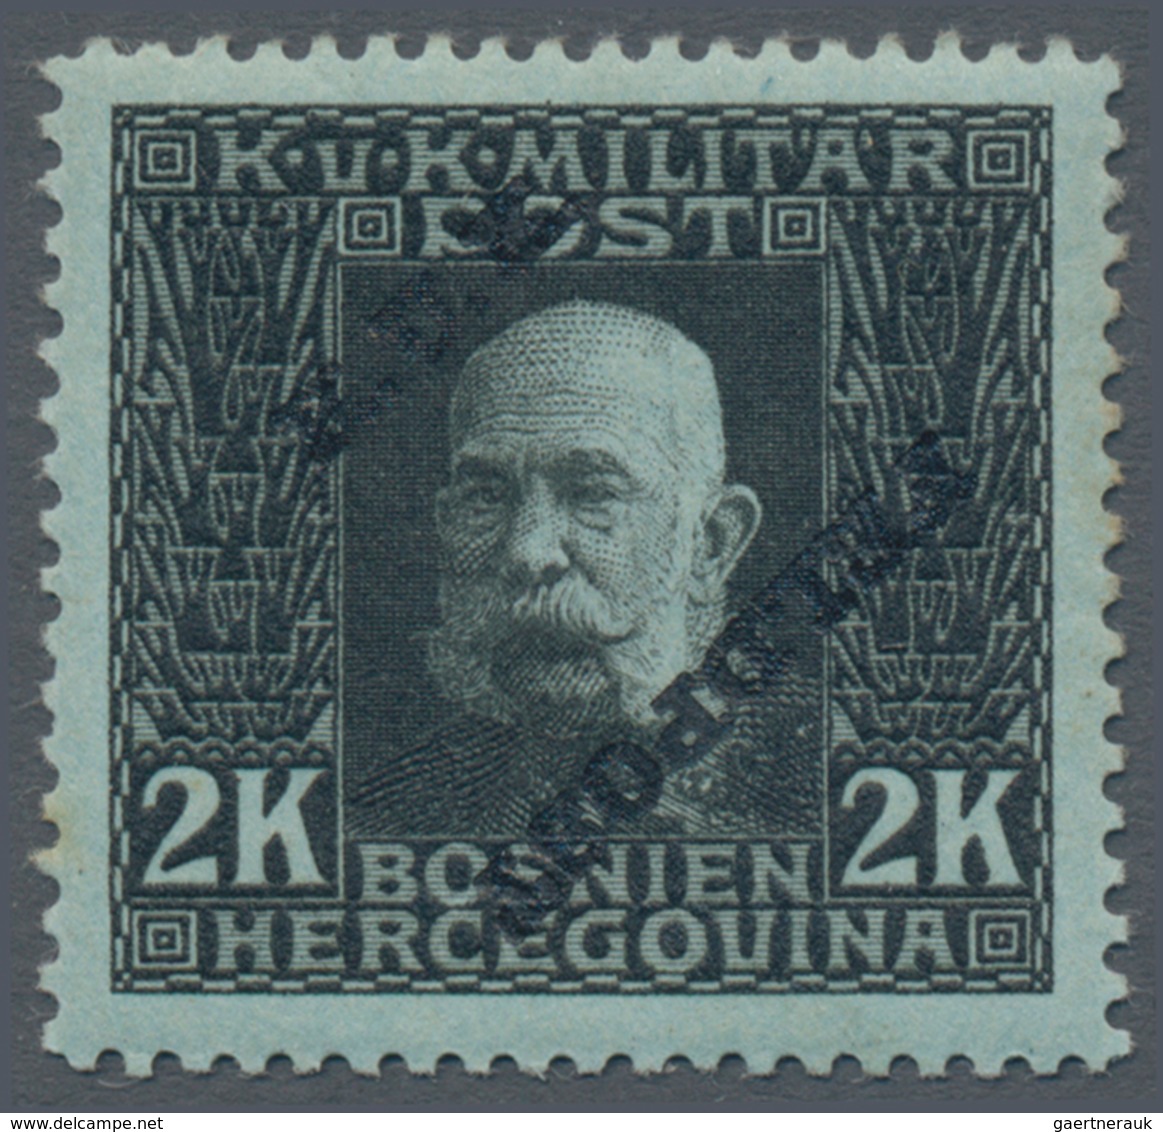 Österreichisch-Ungarische Feldpost - Allgemeine Ausgabe: 1915, 1 H - 10 K Franz Joseph gezähnt mit s